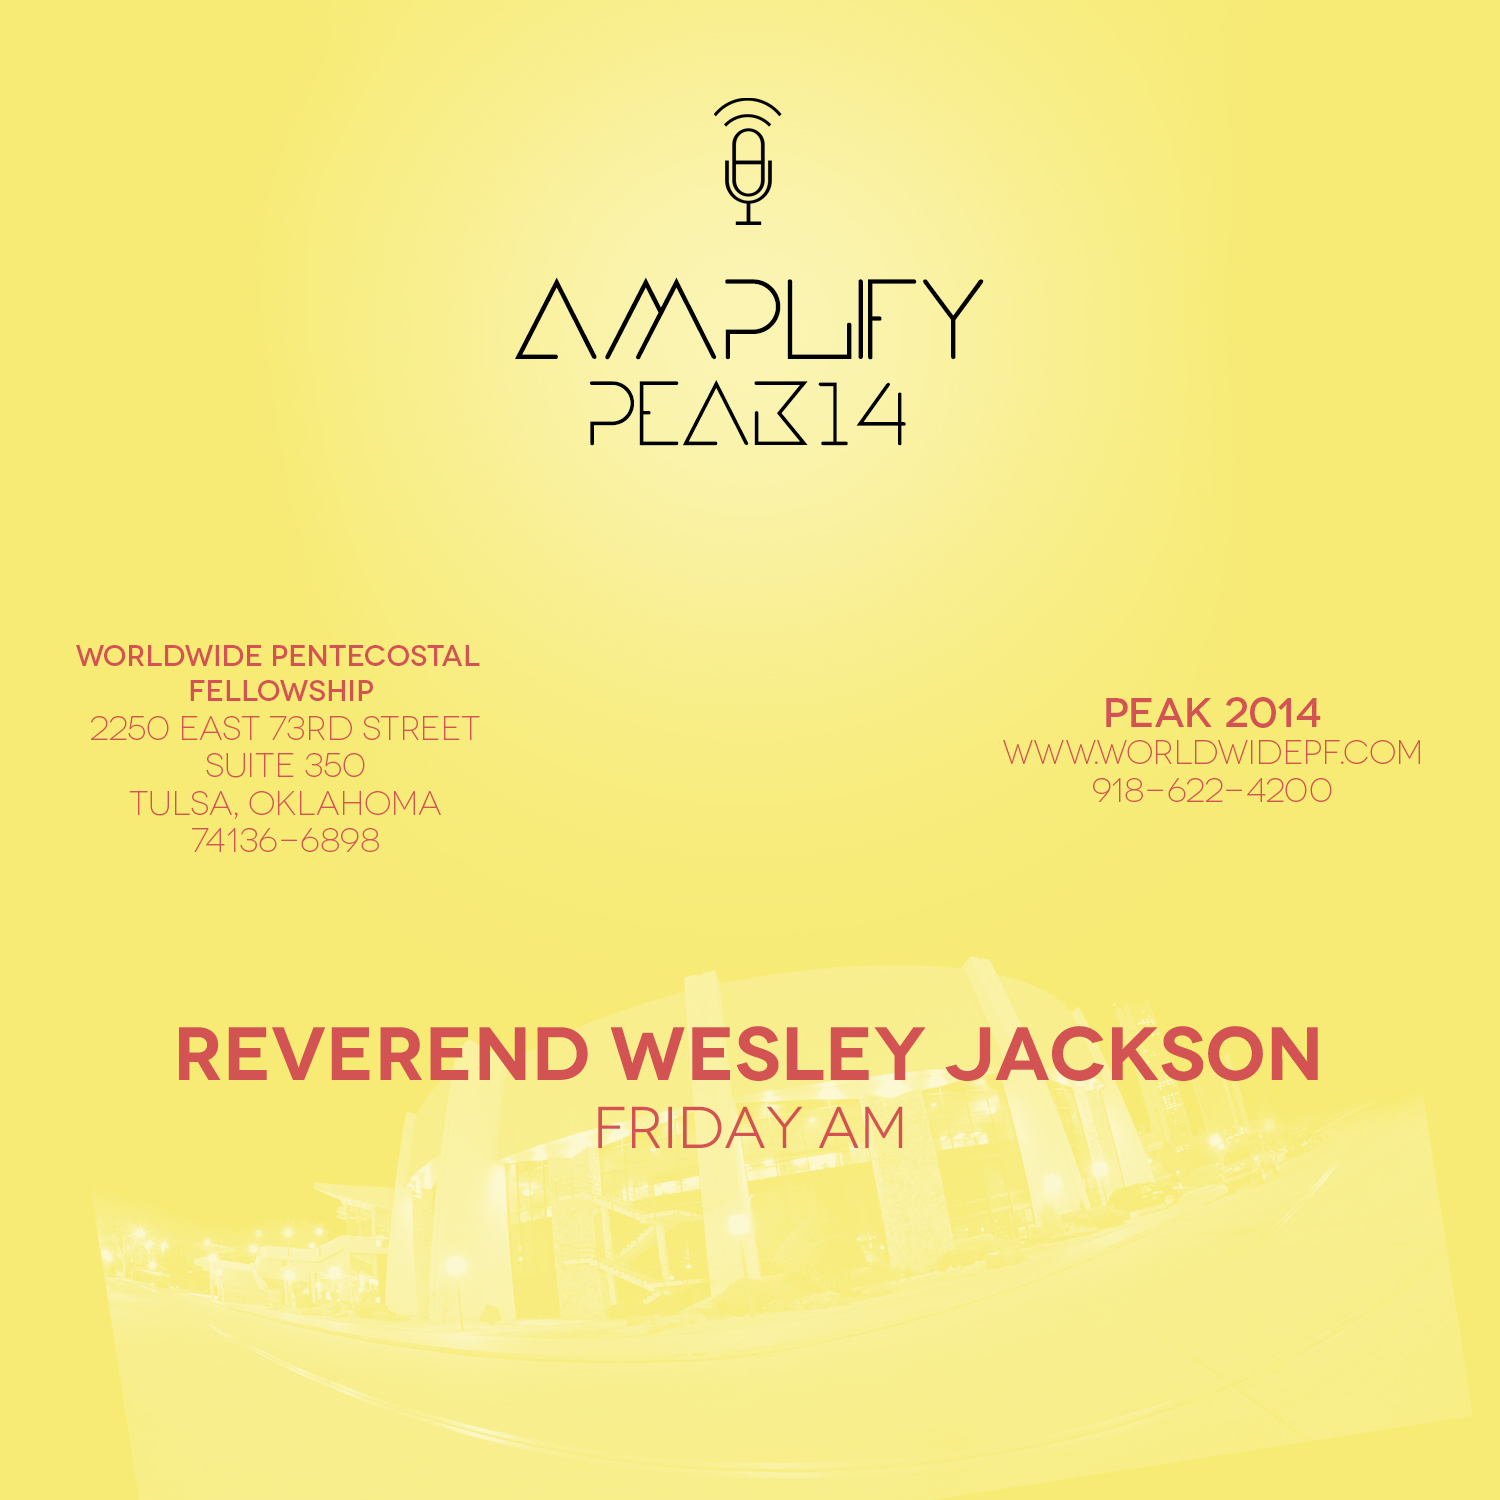 2014 PEAK Rev. Wesley Jackson